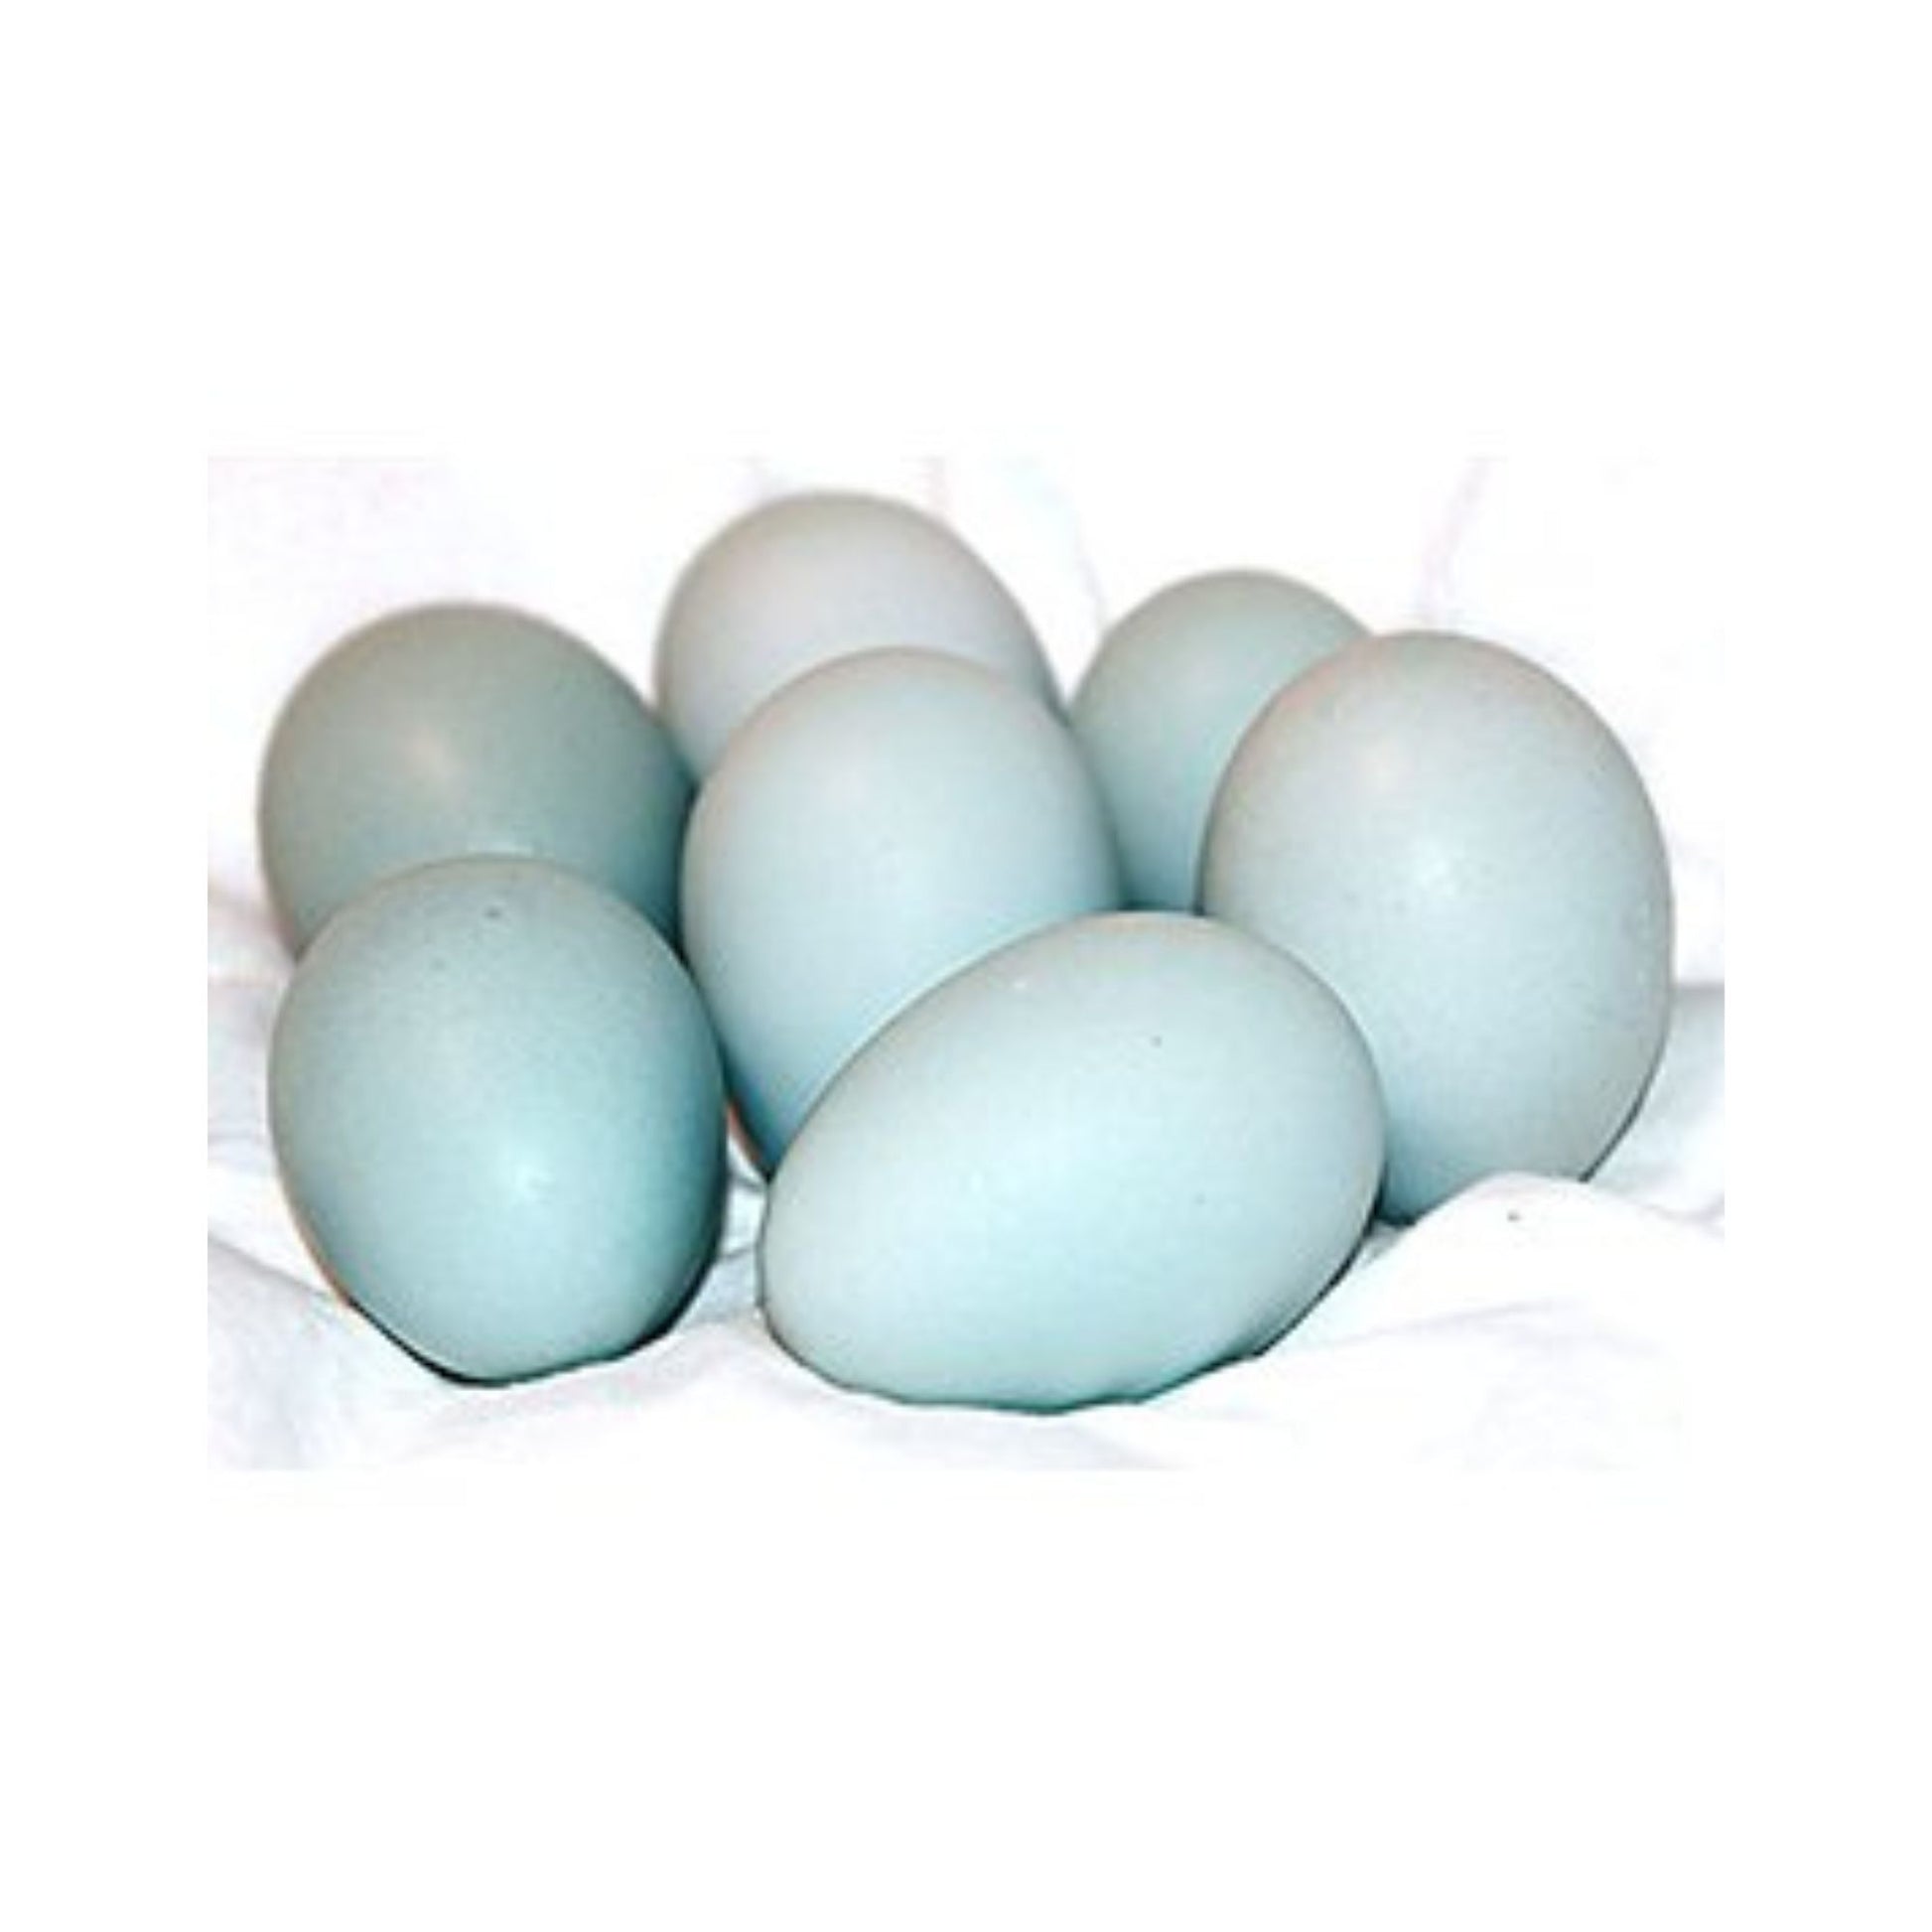 Cream Legbar blue eggs